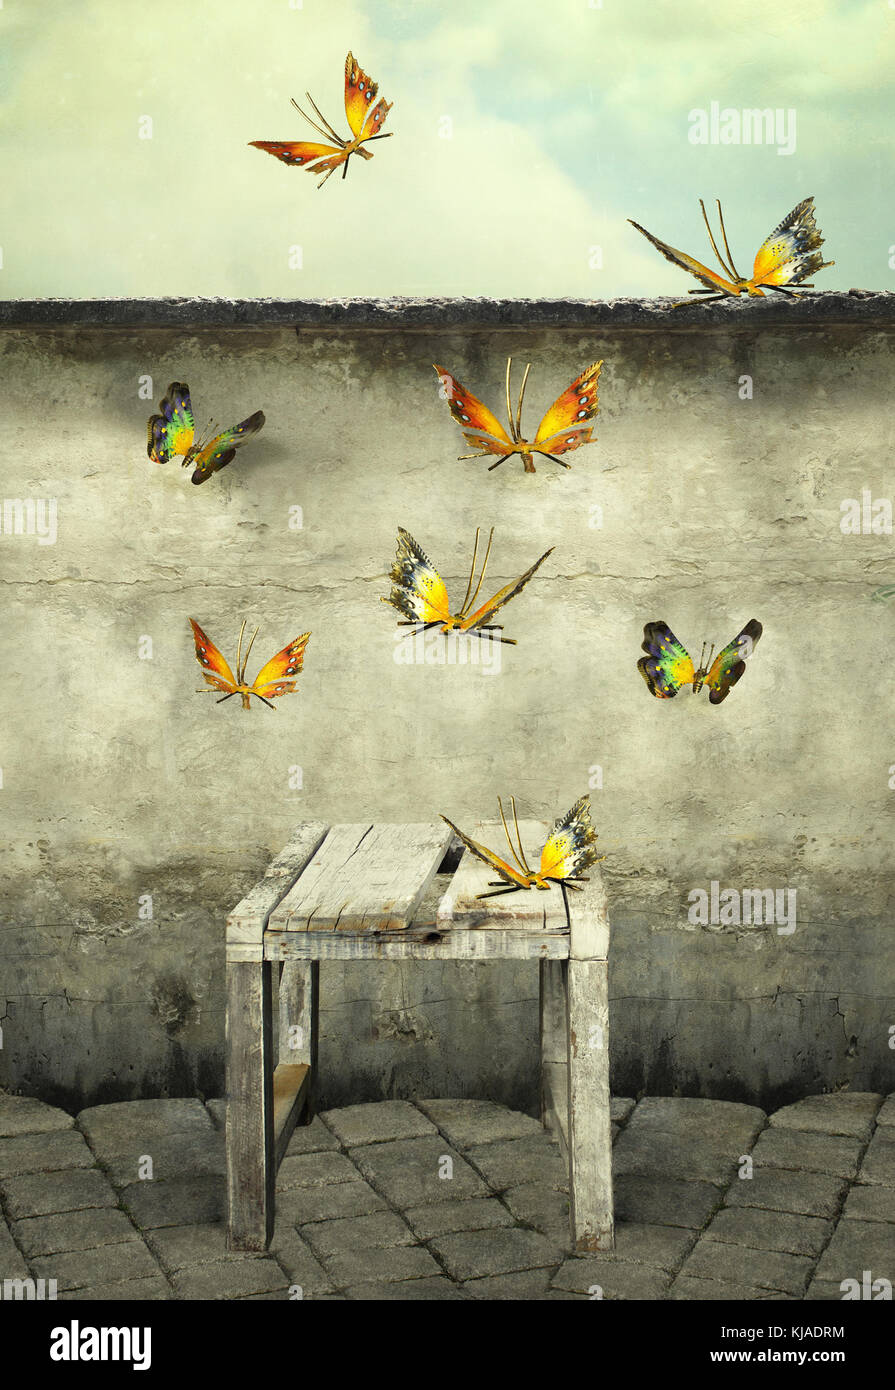 De nombreux papillons colorés voler dans le ciel avec un mur de déroulage et un banc, photo d'illustration et artistique Banque D'Images